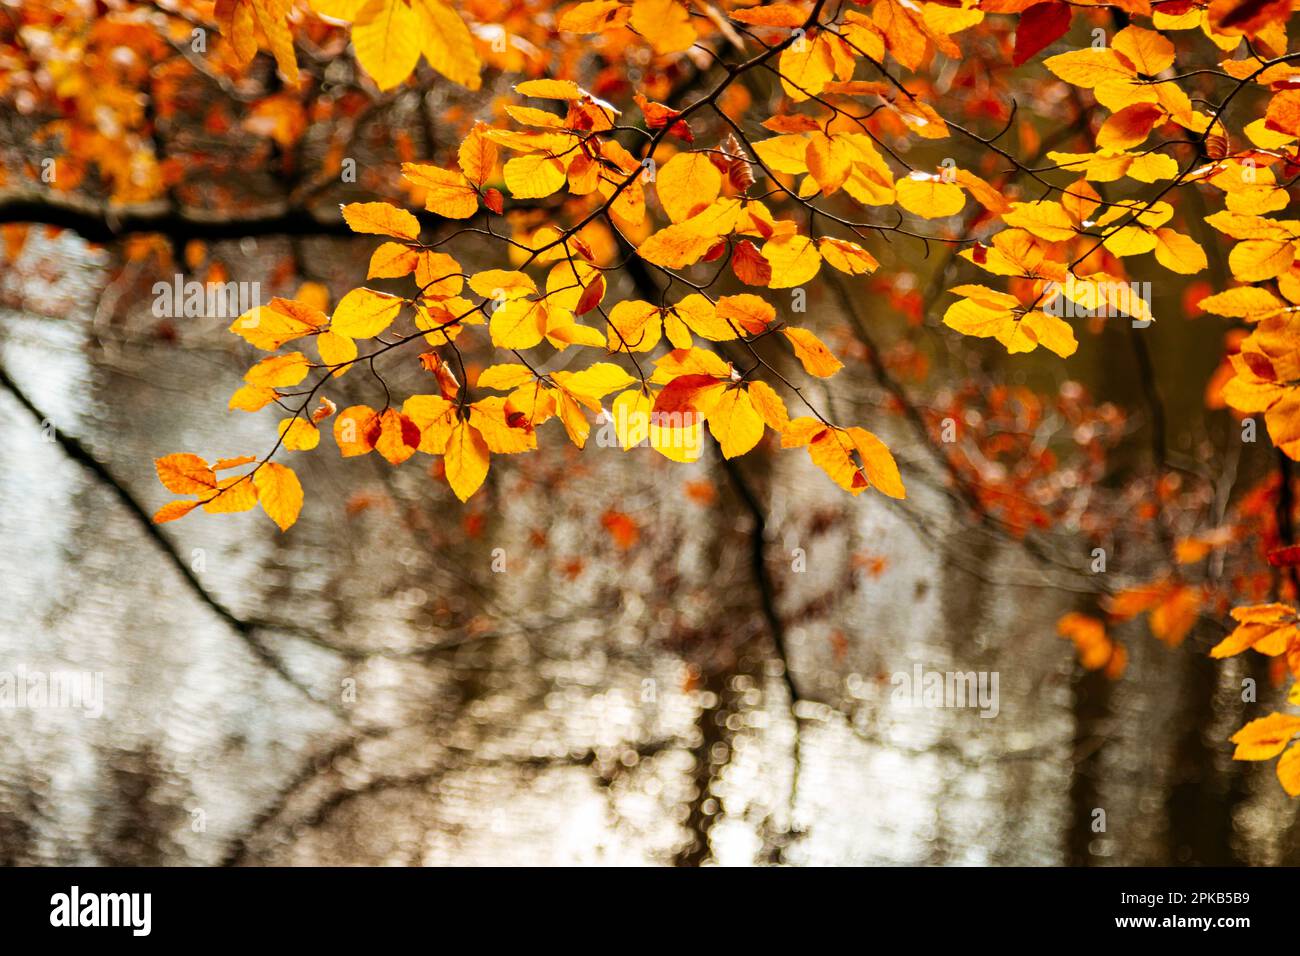 Externsteine en noviembre en el bosque de Teutoburg Foto de stock